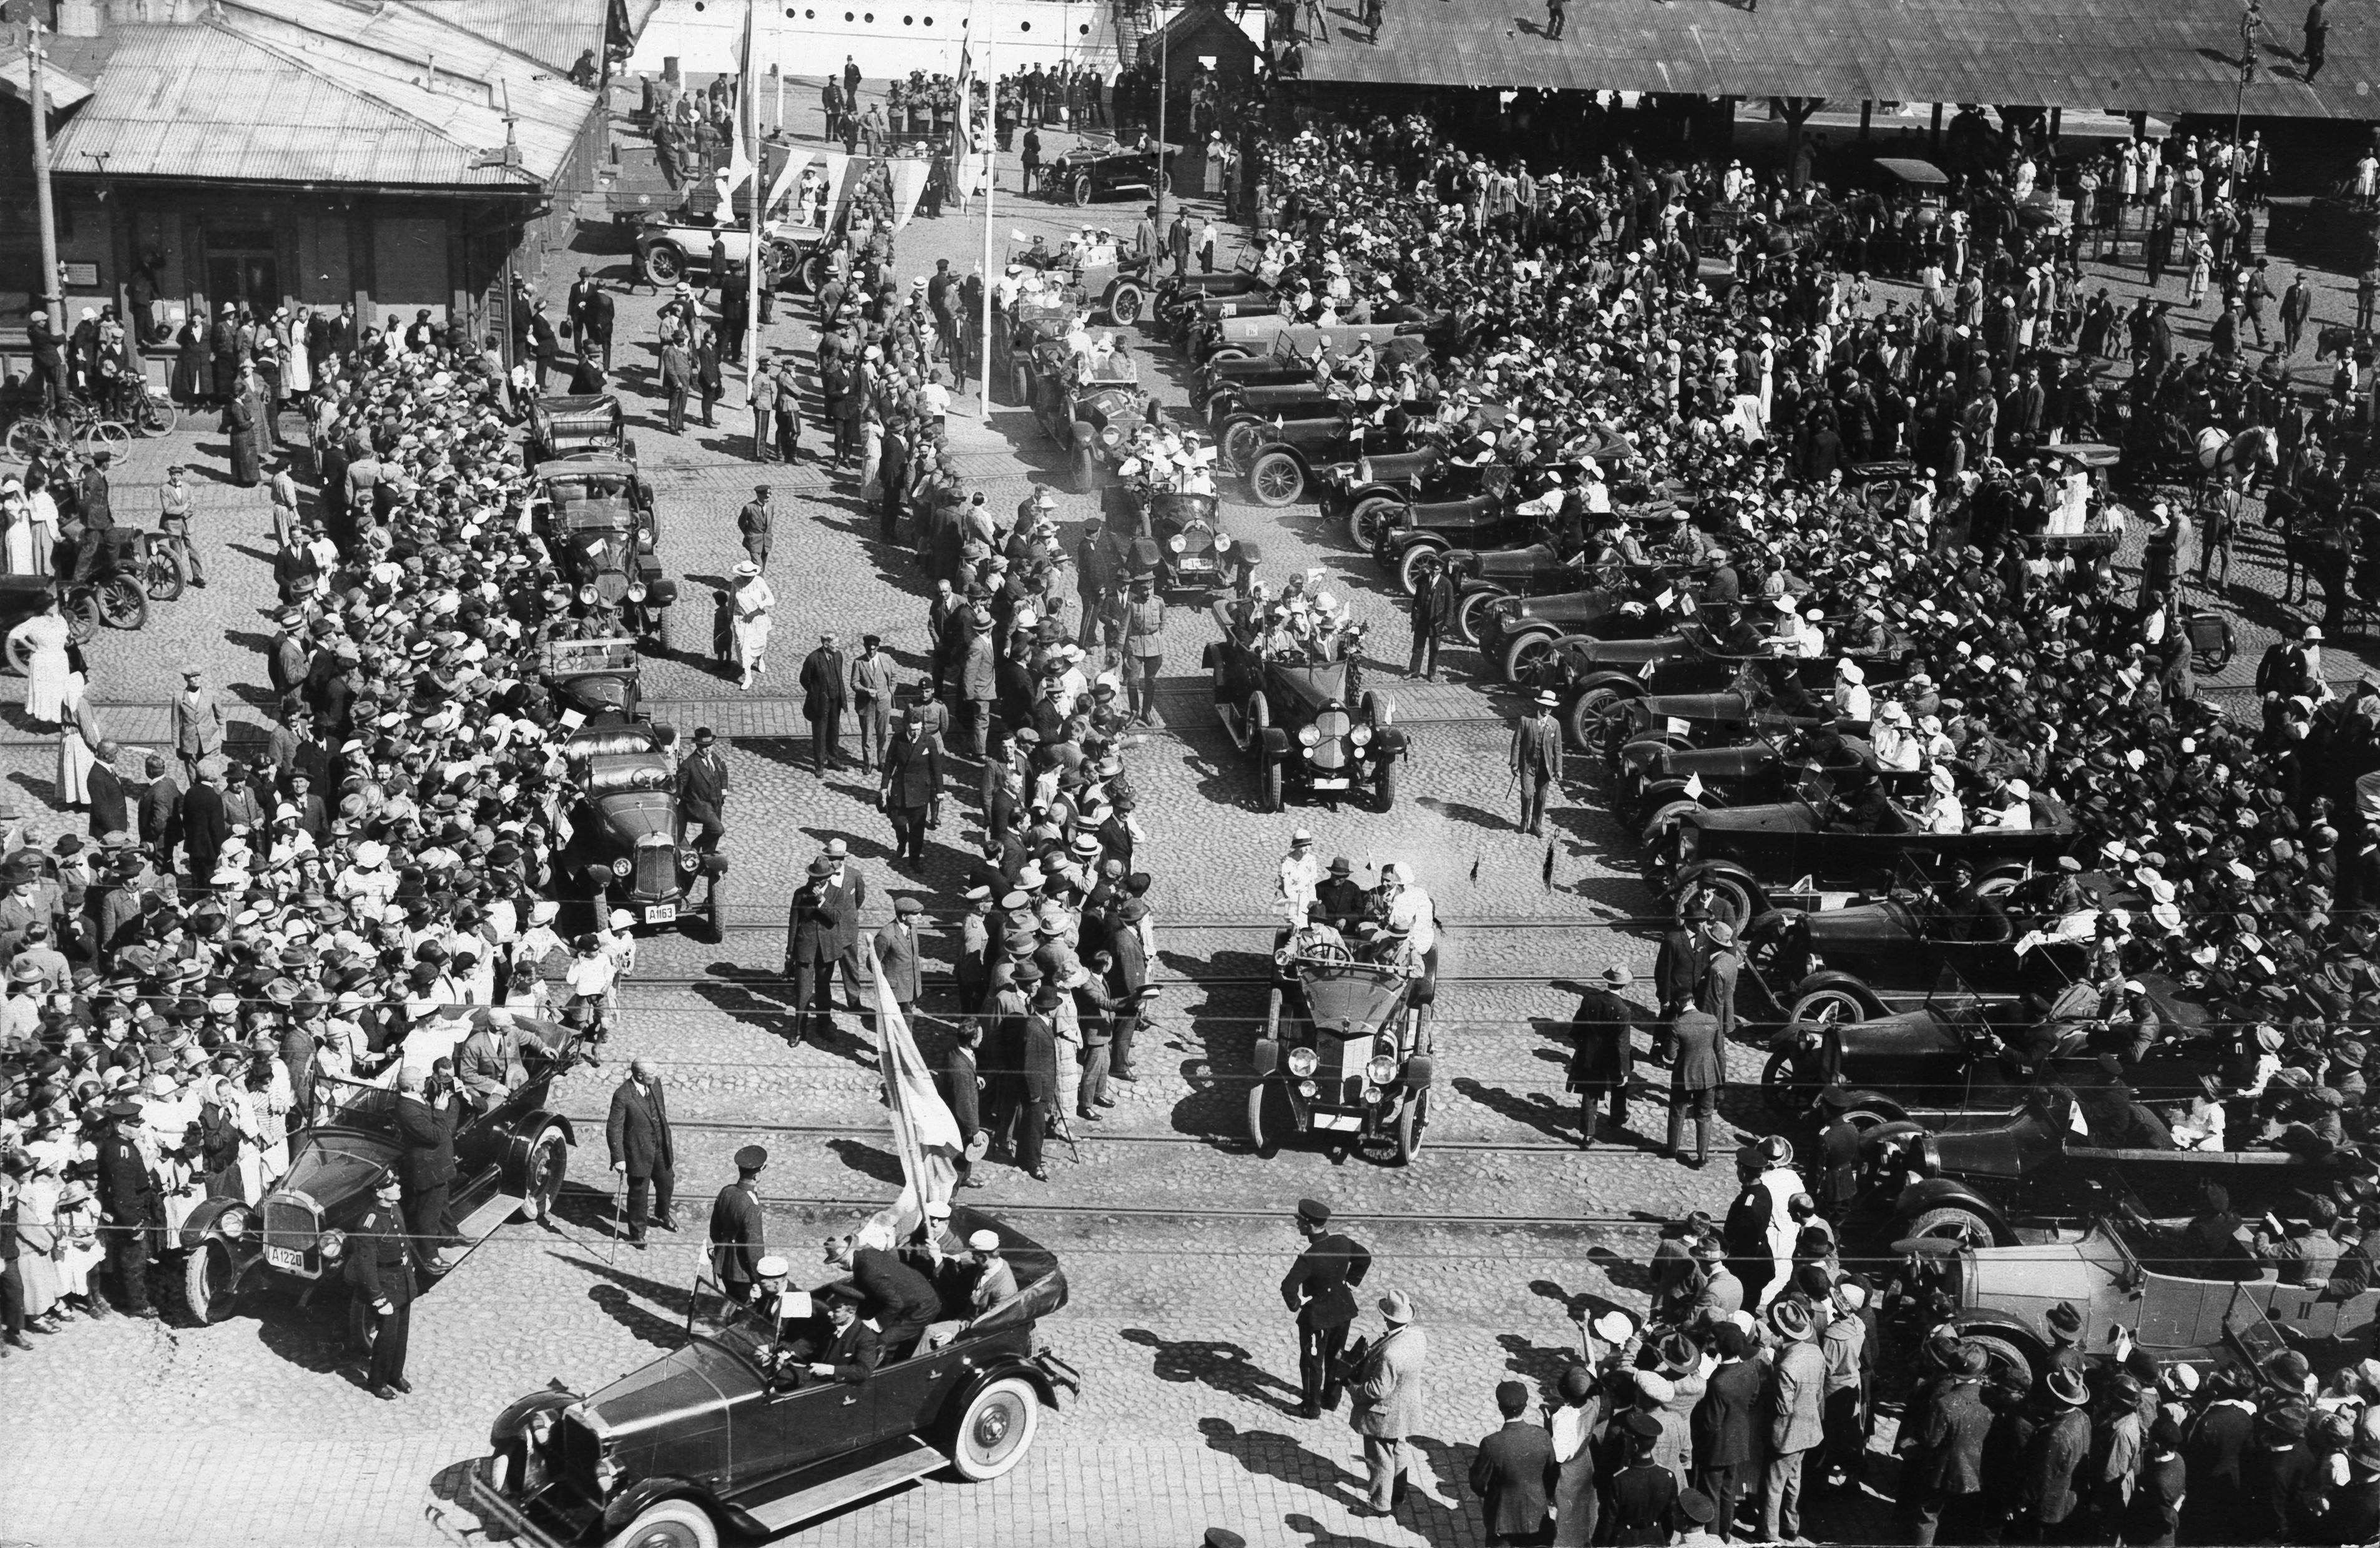 Pariisin olympialaisista saapuville urheilijoille järjestetty autoajelu 18.7.1924. Autot lähdössä kaupungille.